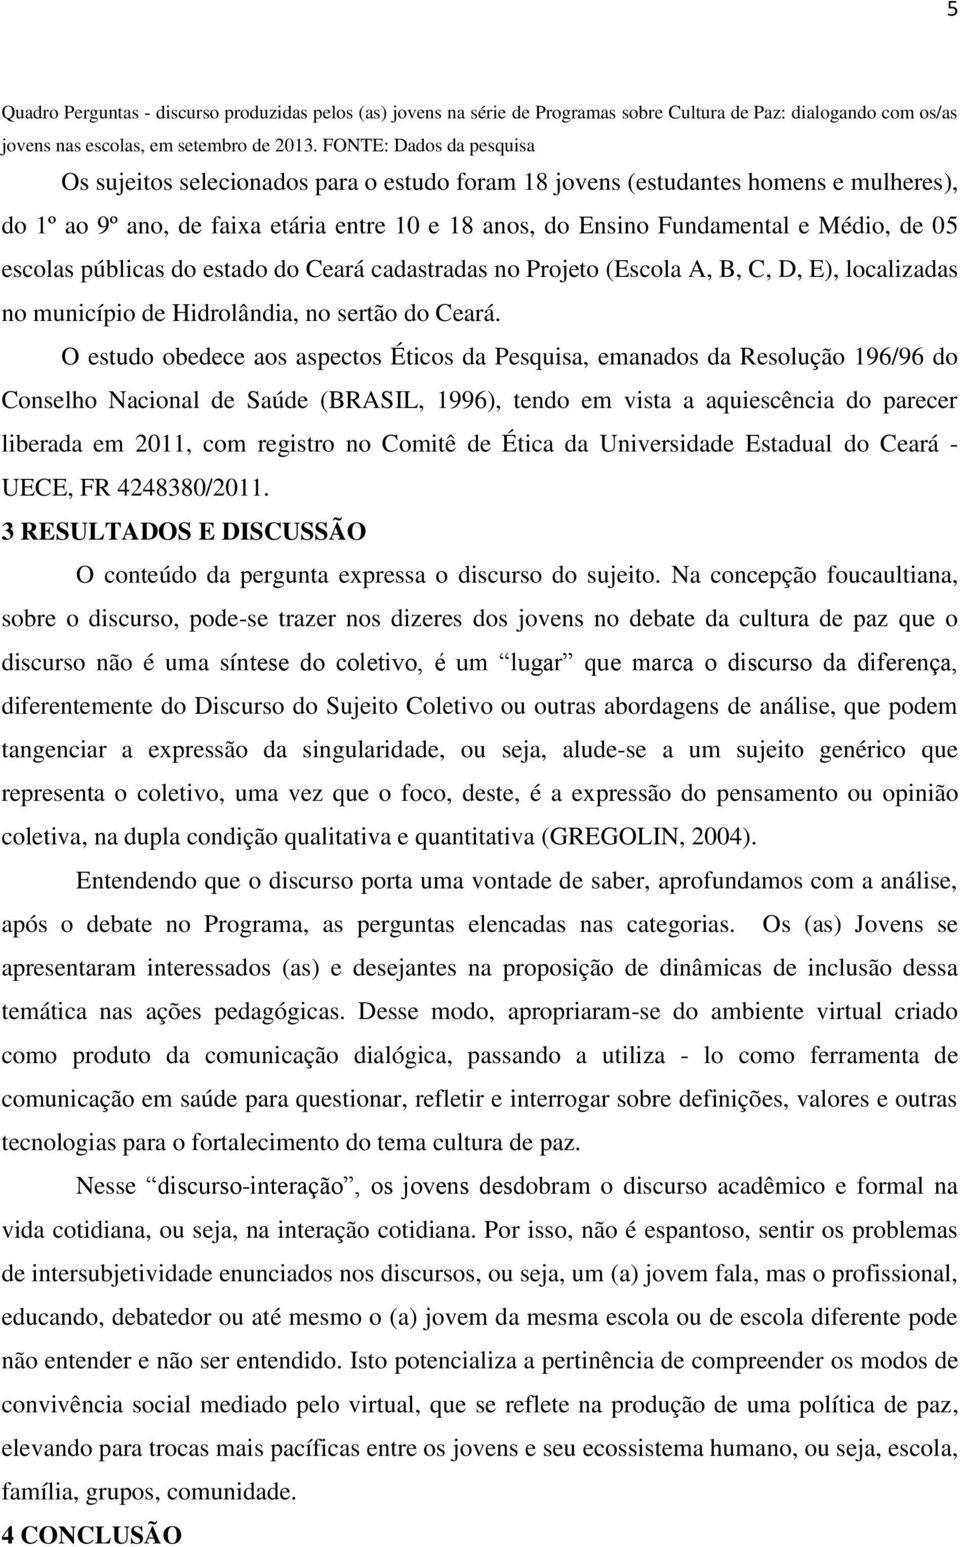 05 escolas públicas do estado do Ceará cadastradas no Projeto (Escola A, B, C, D, E), localizadas no município de Hidrolândia, no sertão do Ceará.